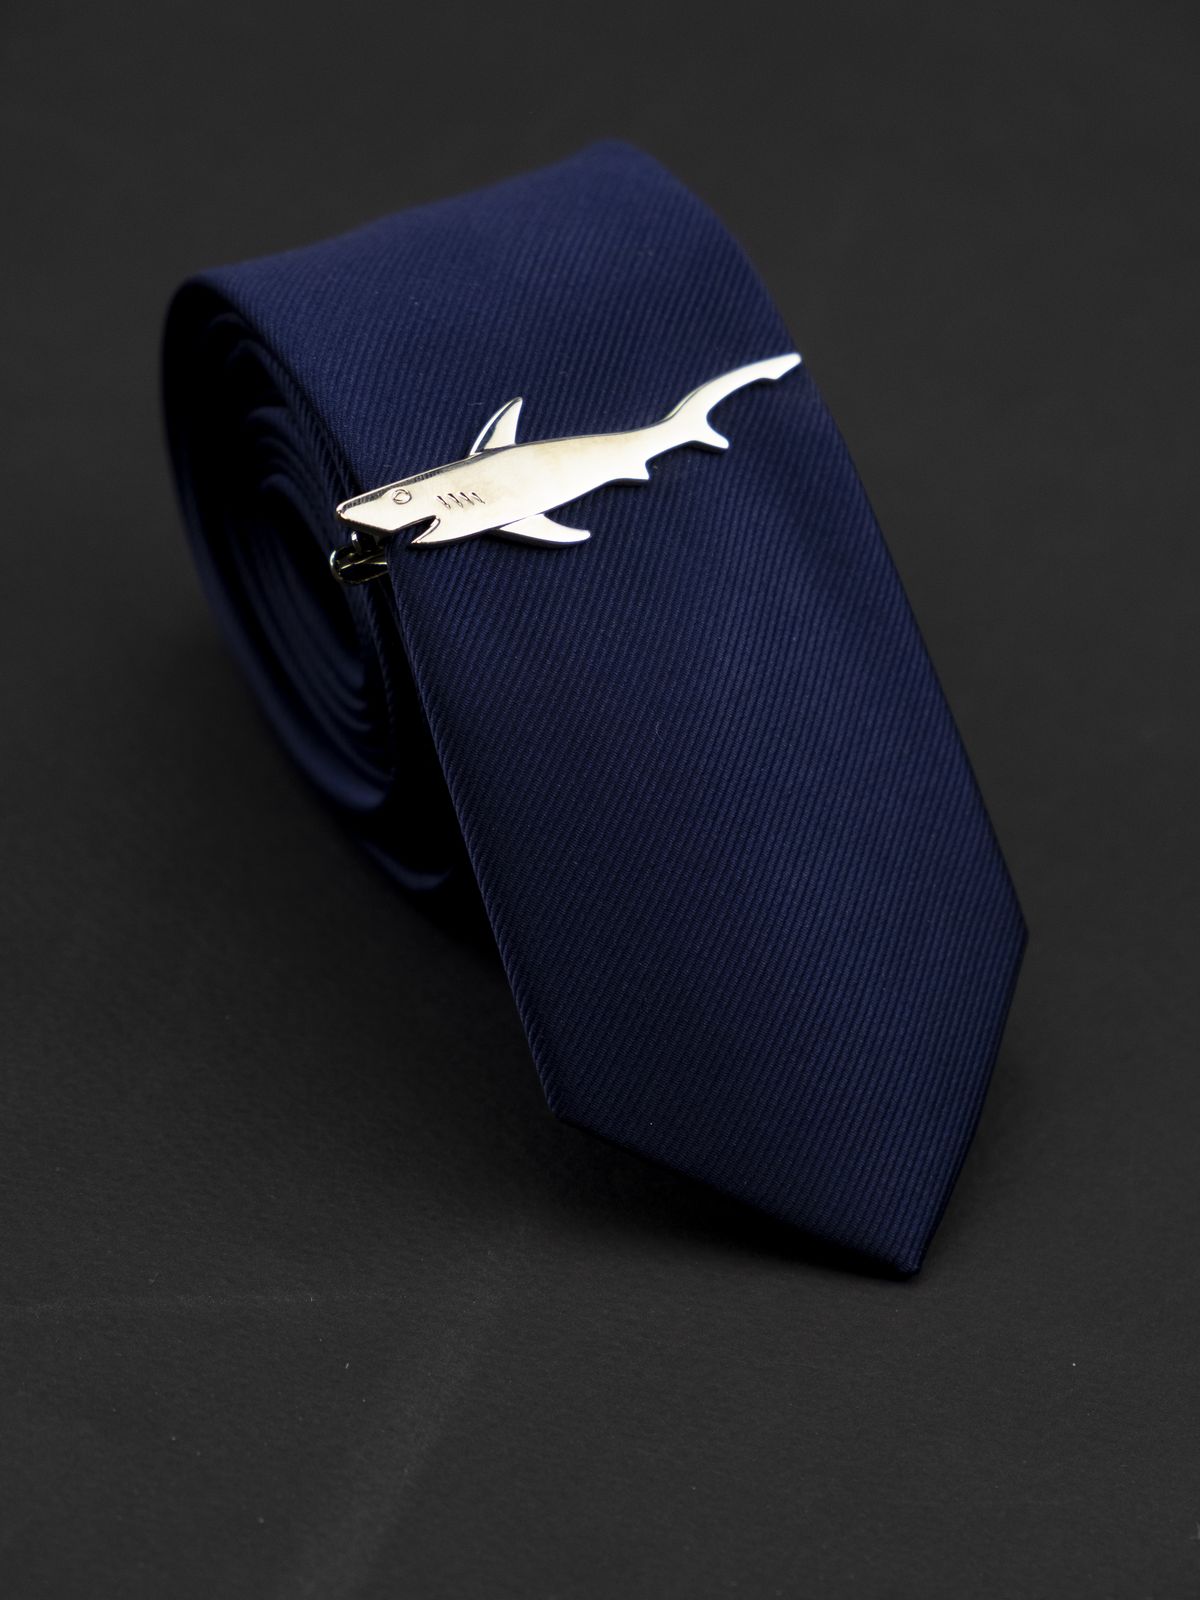 Зажим для галстука Акула Белый купить. Состав: Ювелирный спав (alloy), Цвет: Белый, Габариты: 65 мм х 20 мм , Вес: 15; 